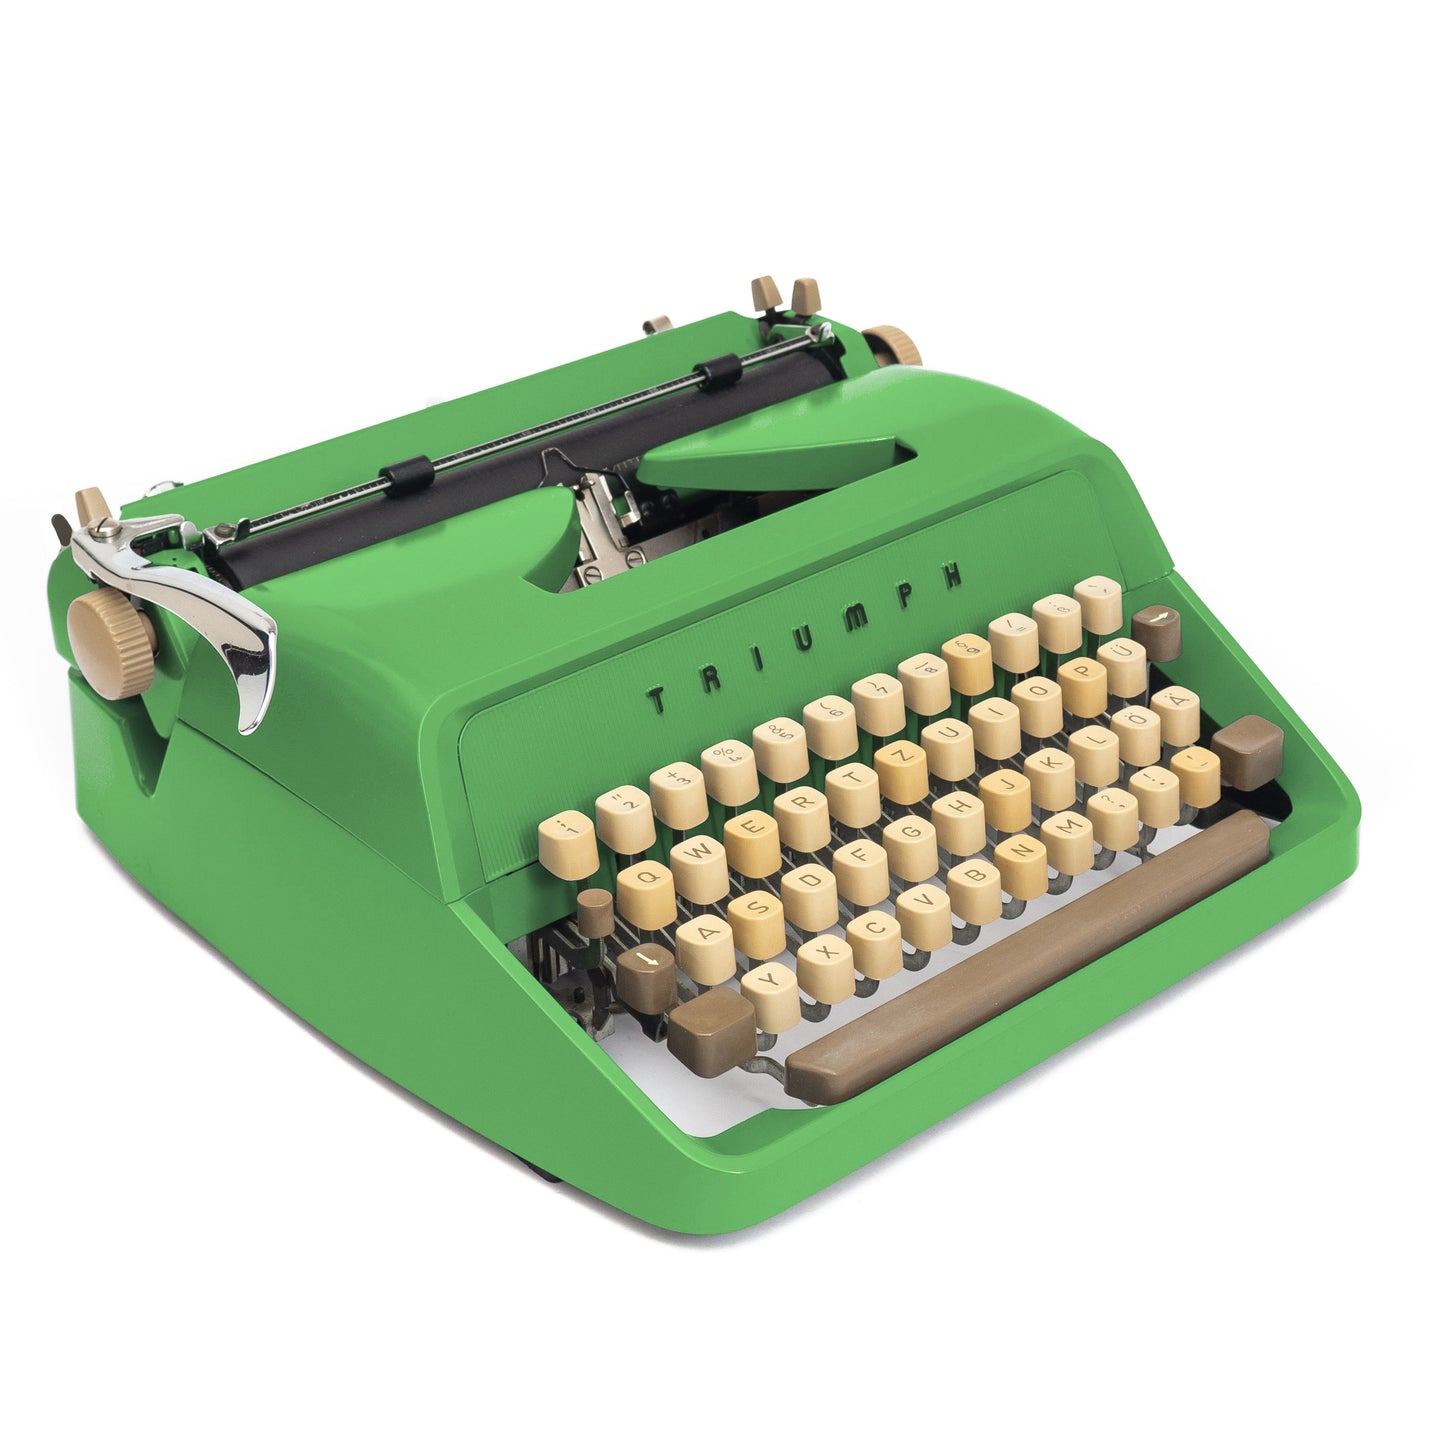 Schreibmaschine Triumph